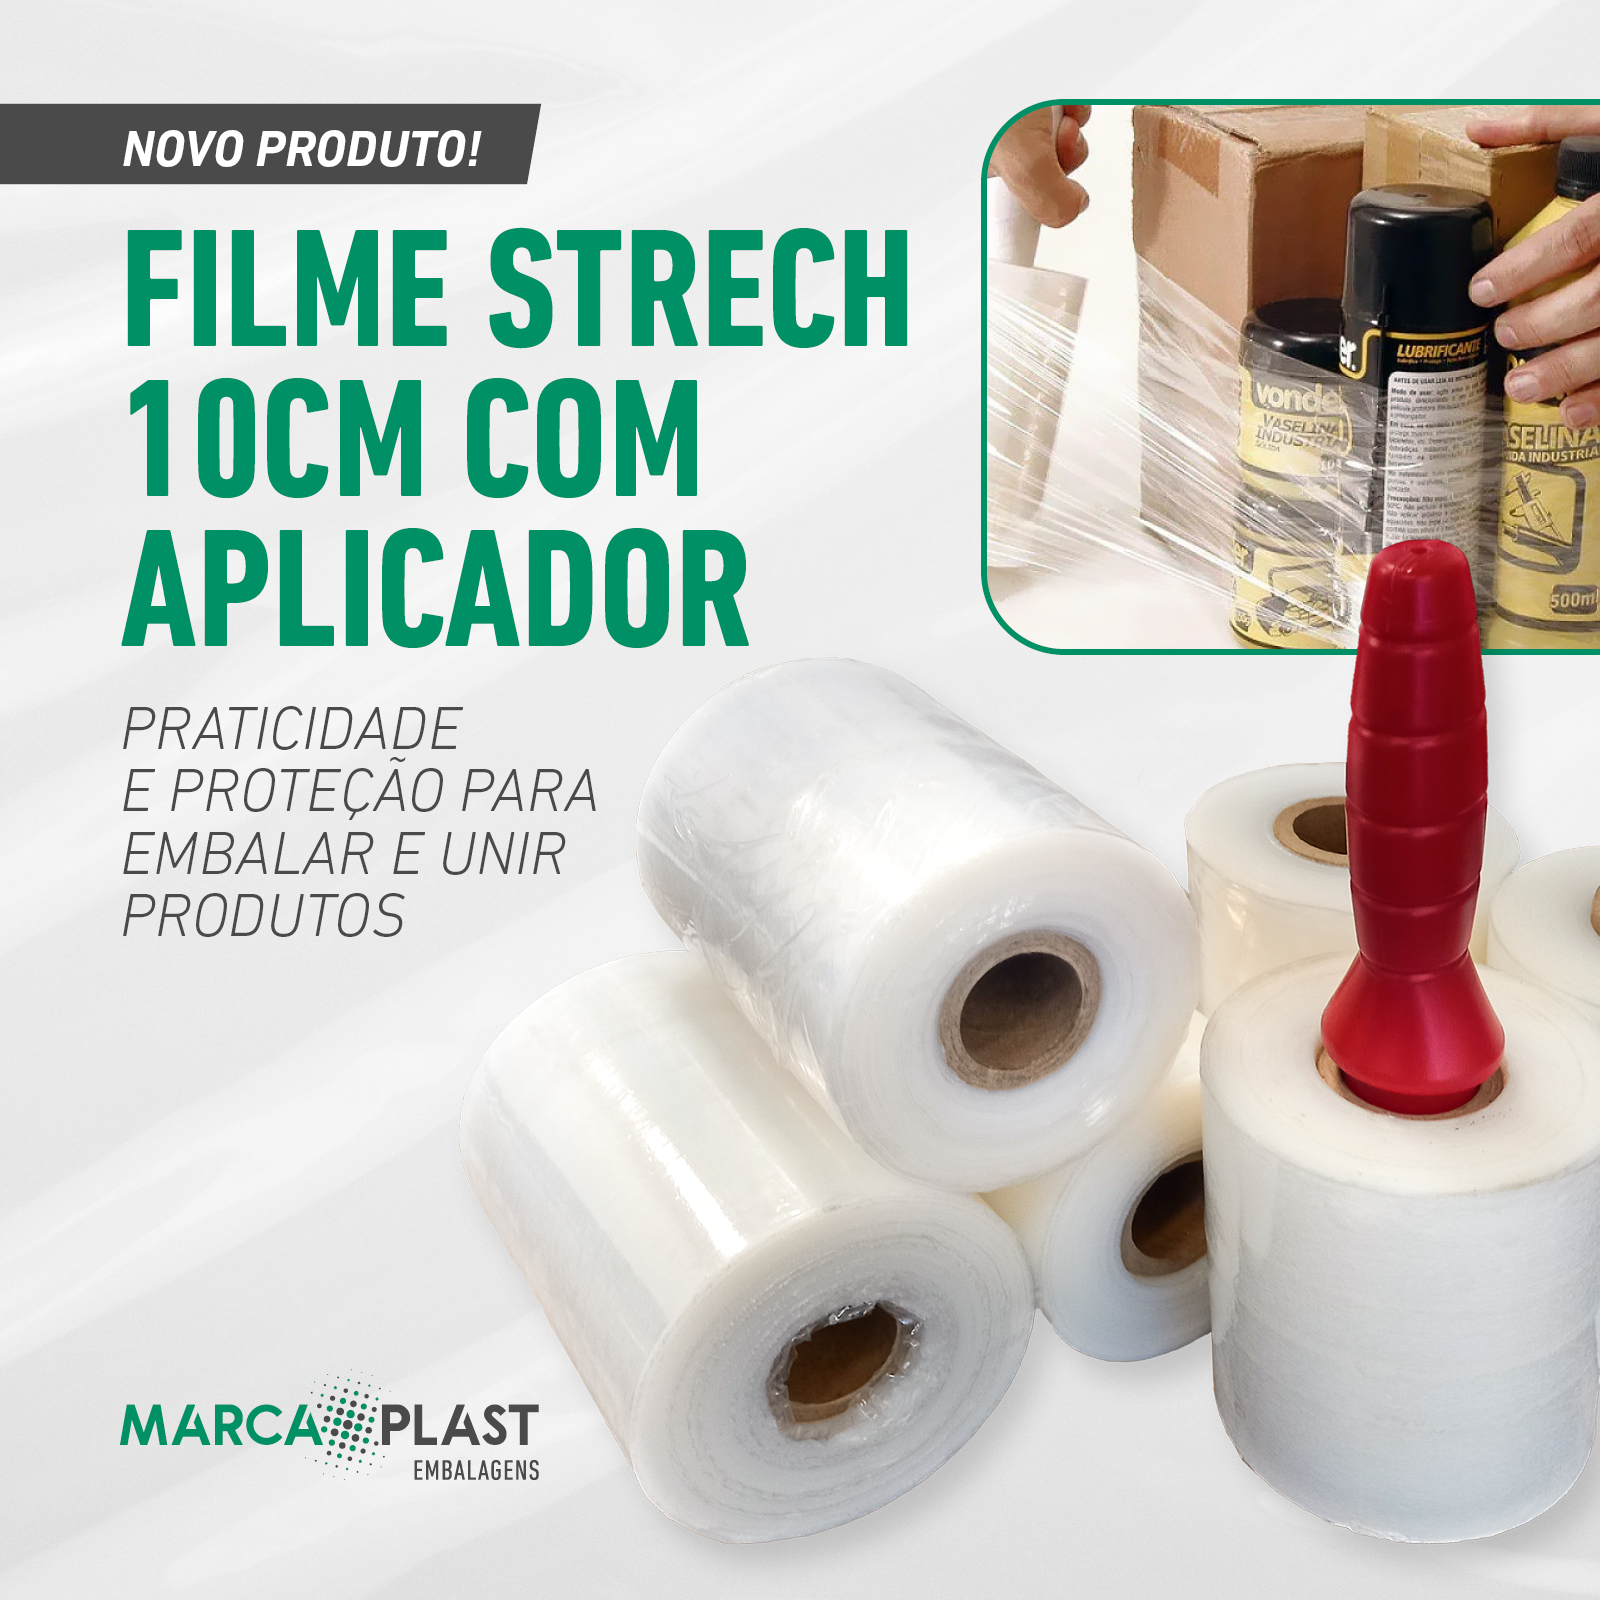 Novo produto: filme stretch 10cm com aplicador